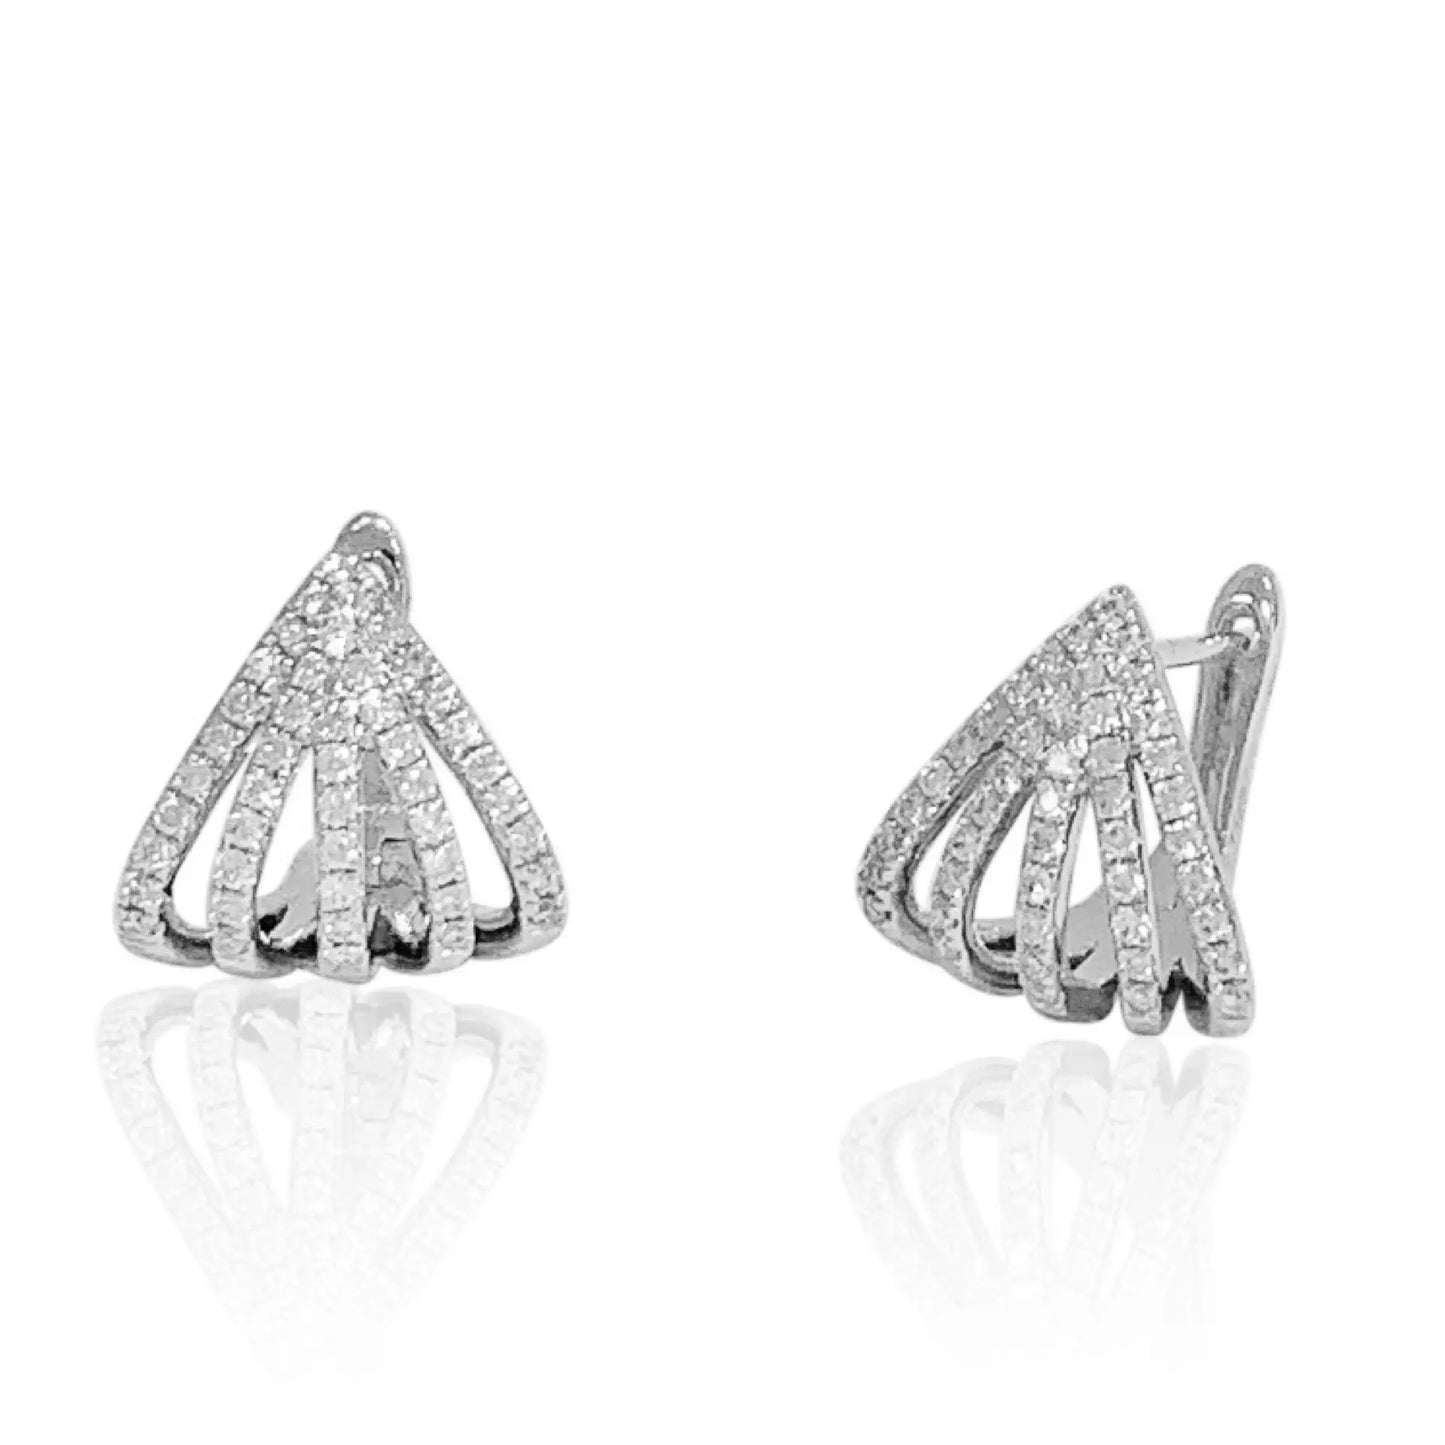 White Gold Earrings White Gold Diamond Huggie Earrings Danson Jewelers Danson Jewelers 